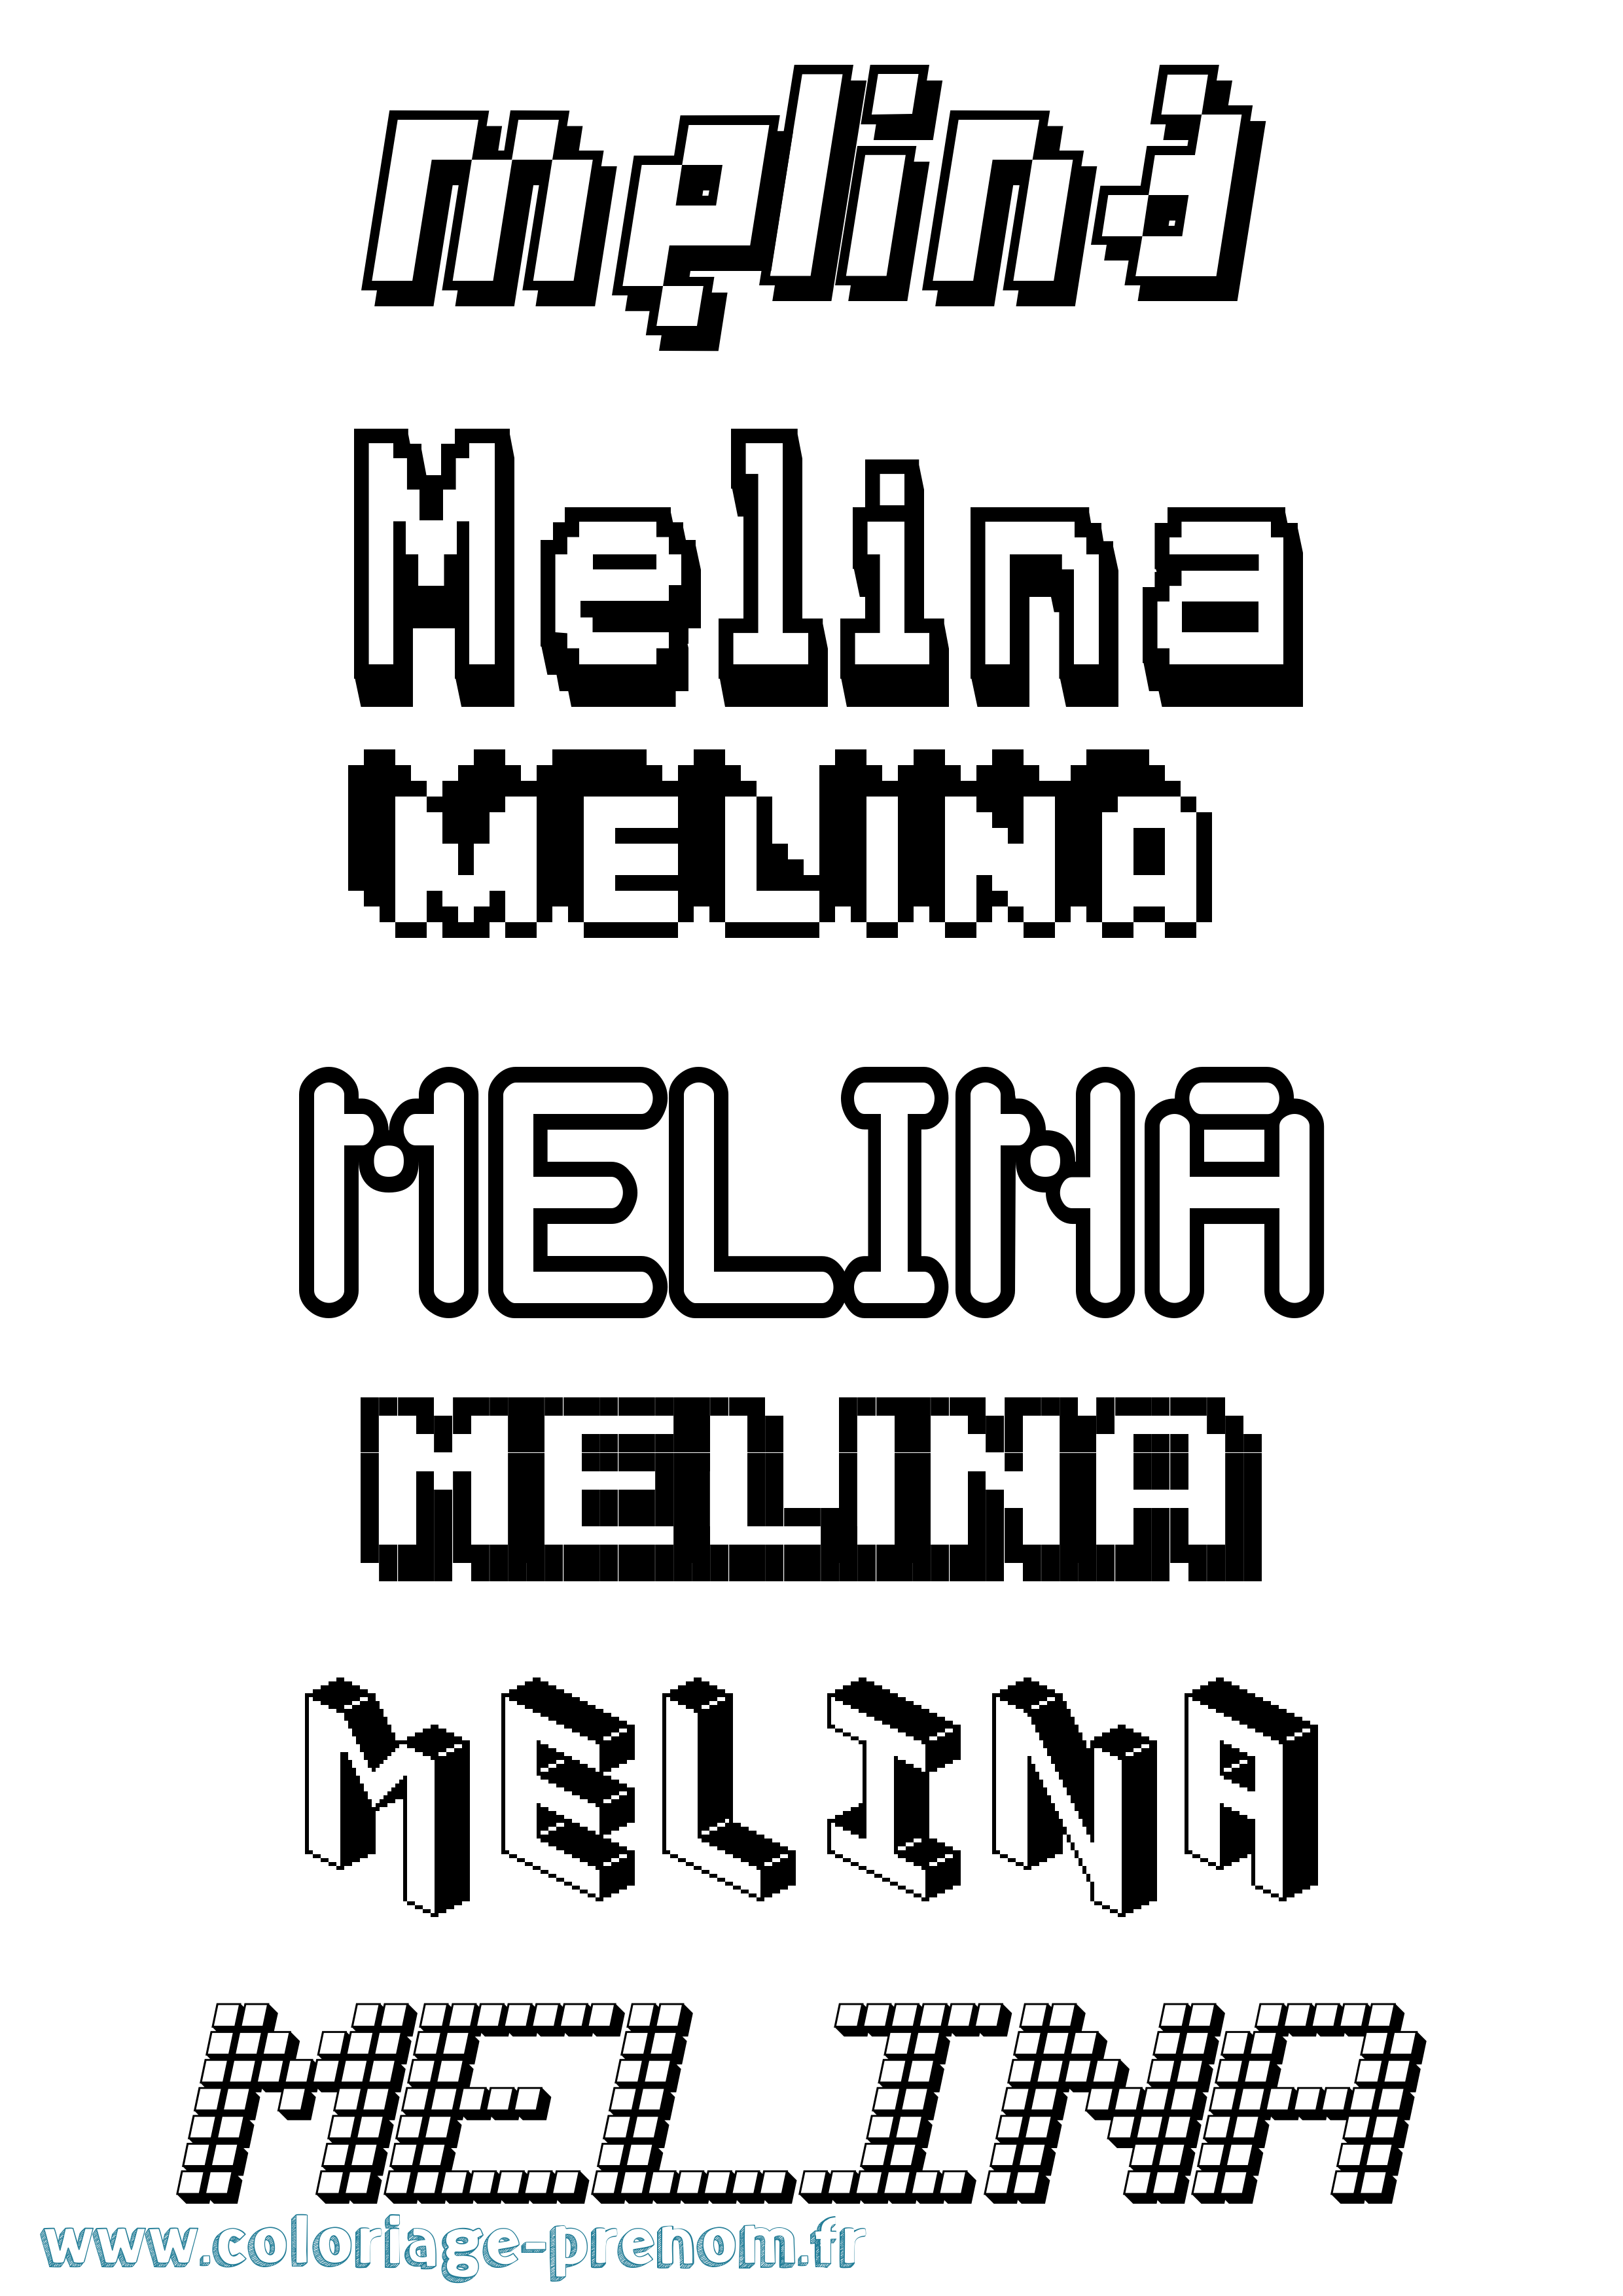 Coloriage prénom Melina Pixel